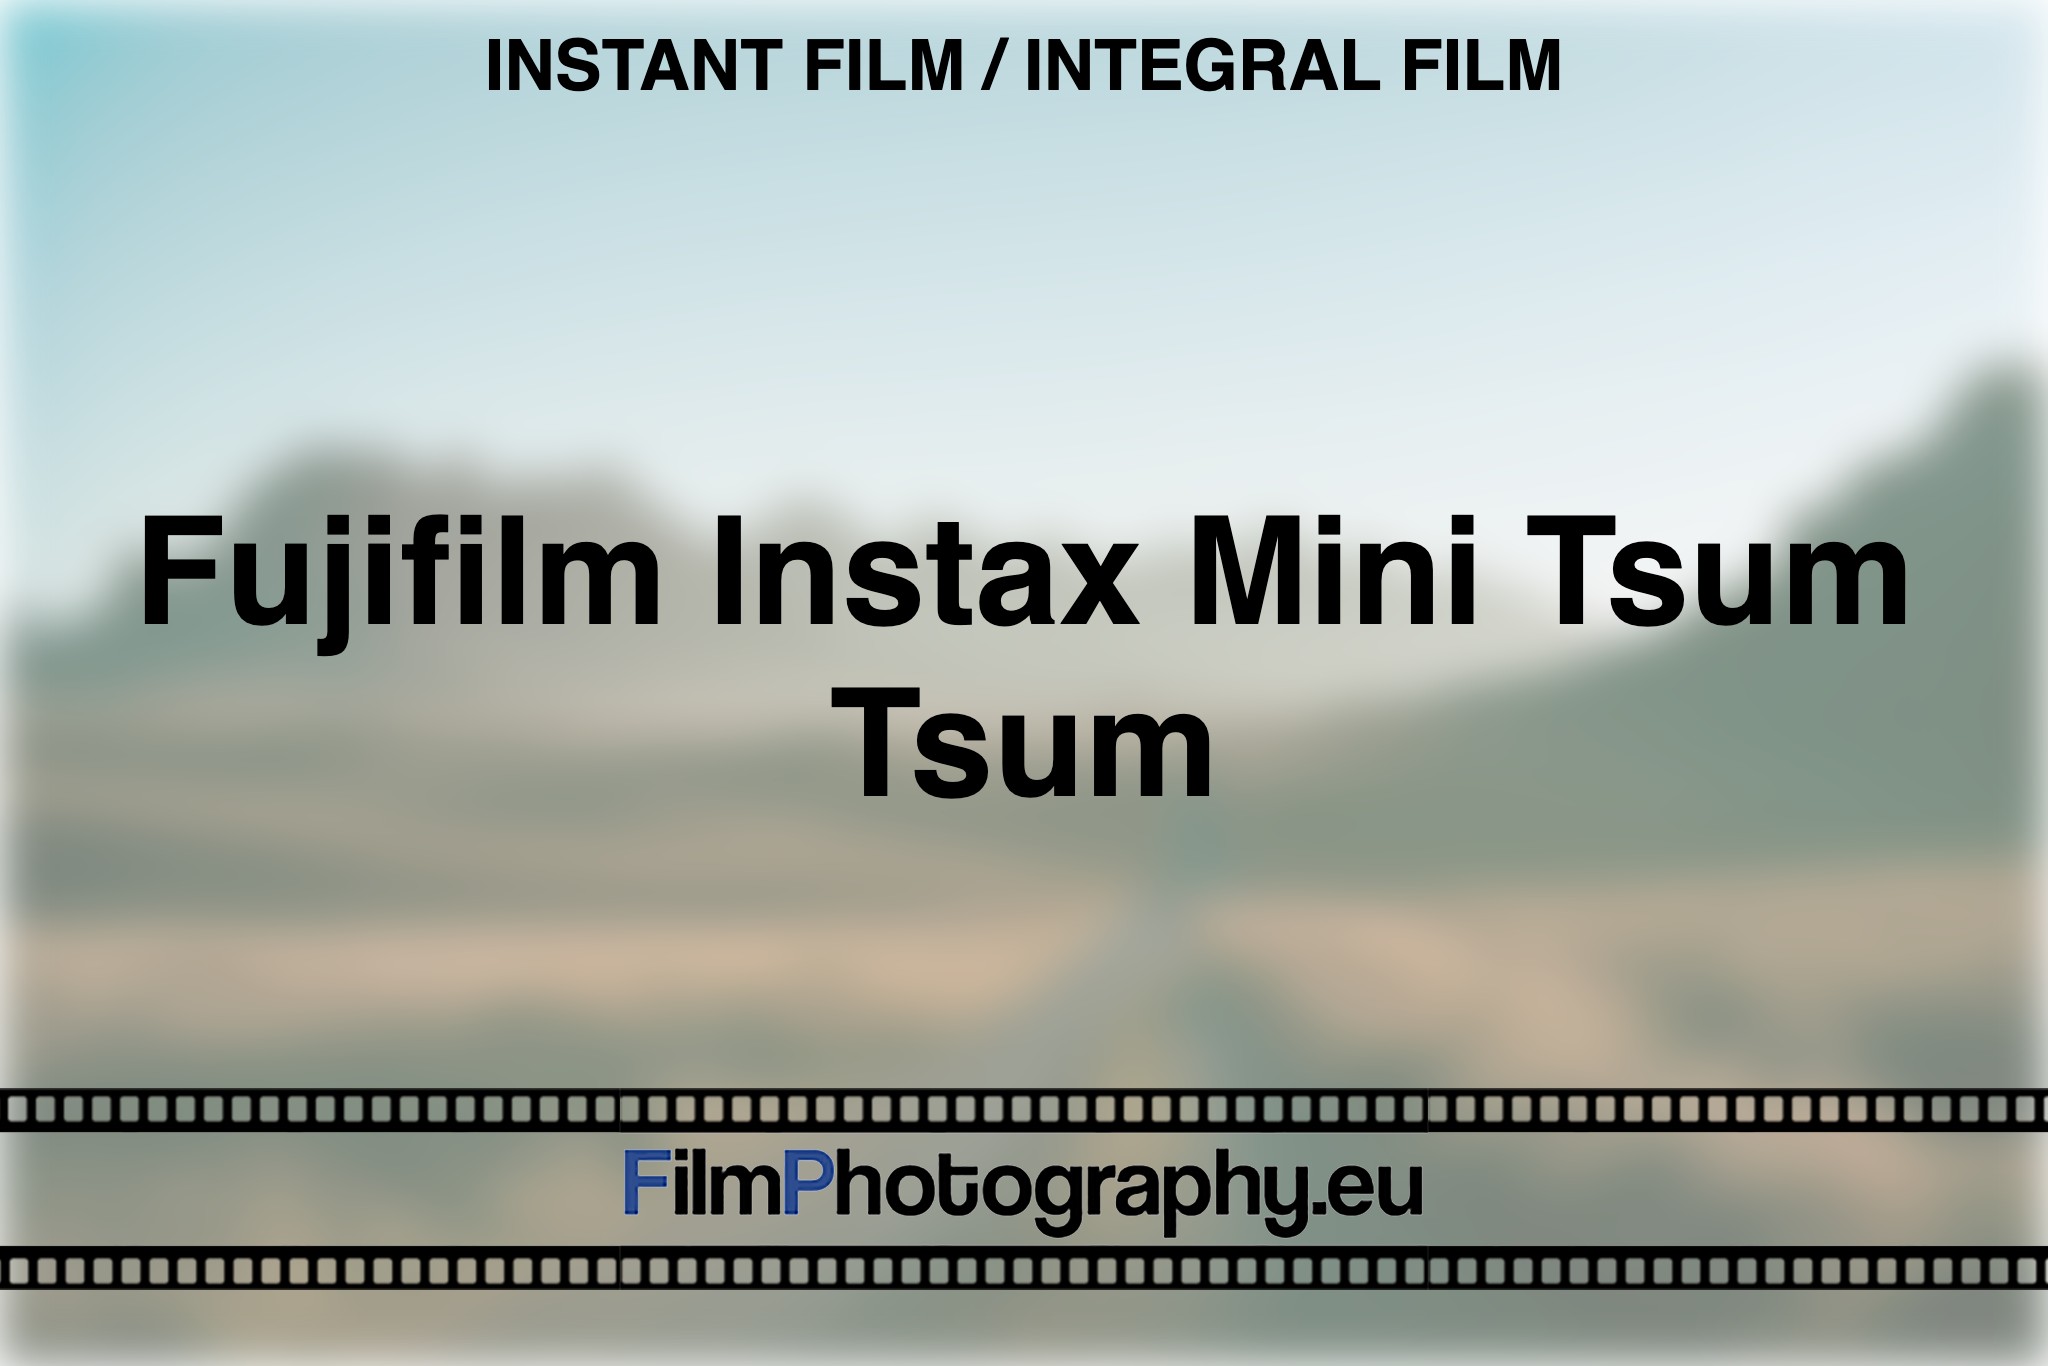 fujifilm-instax-mini-tsum-tsum-instant-film-integral-film-bnv